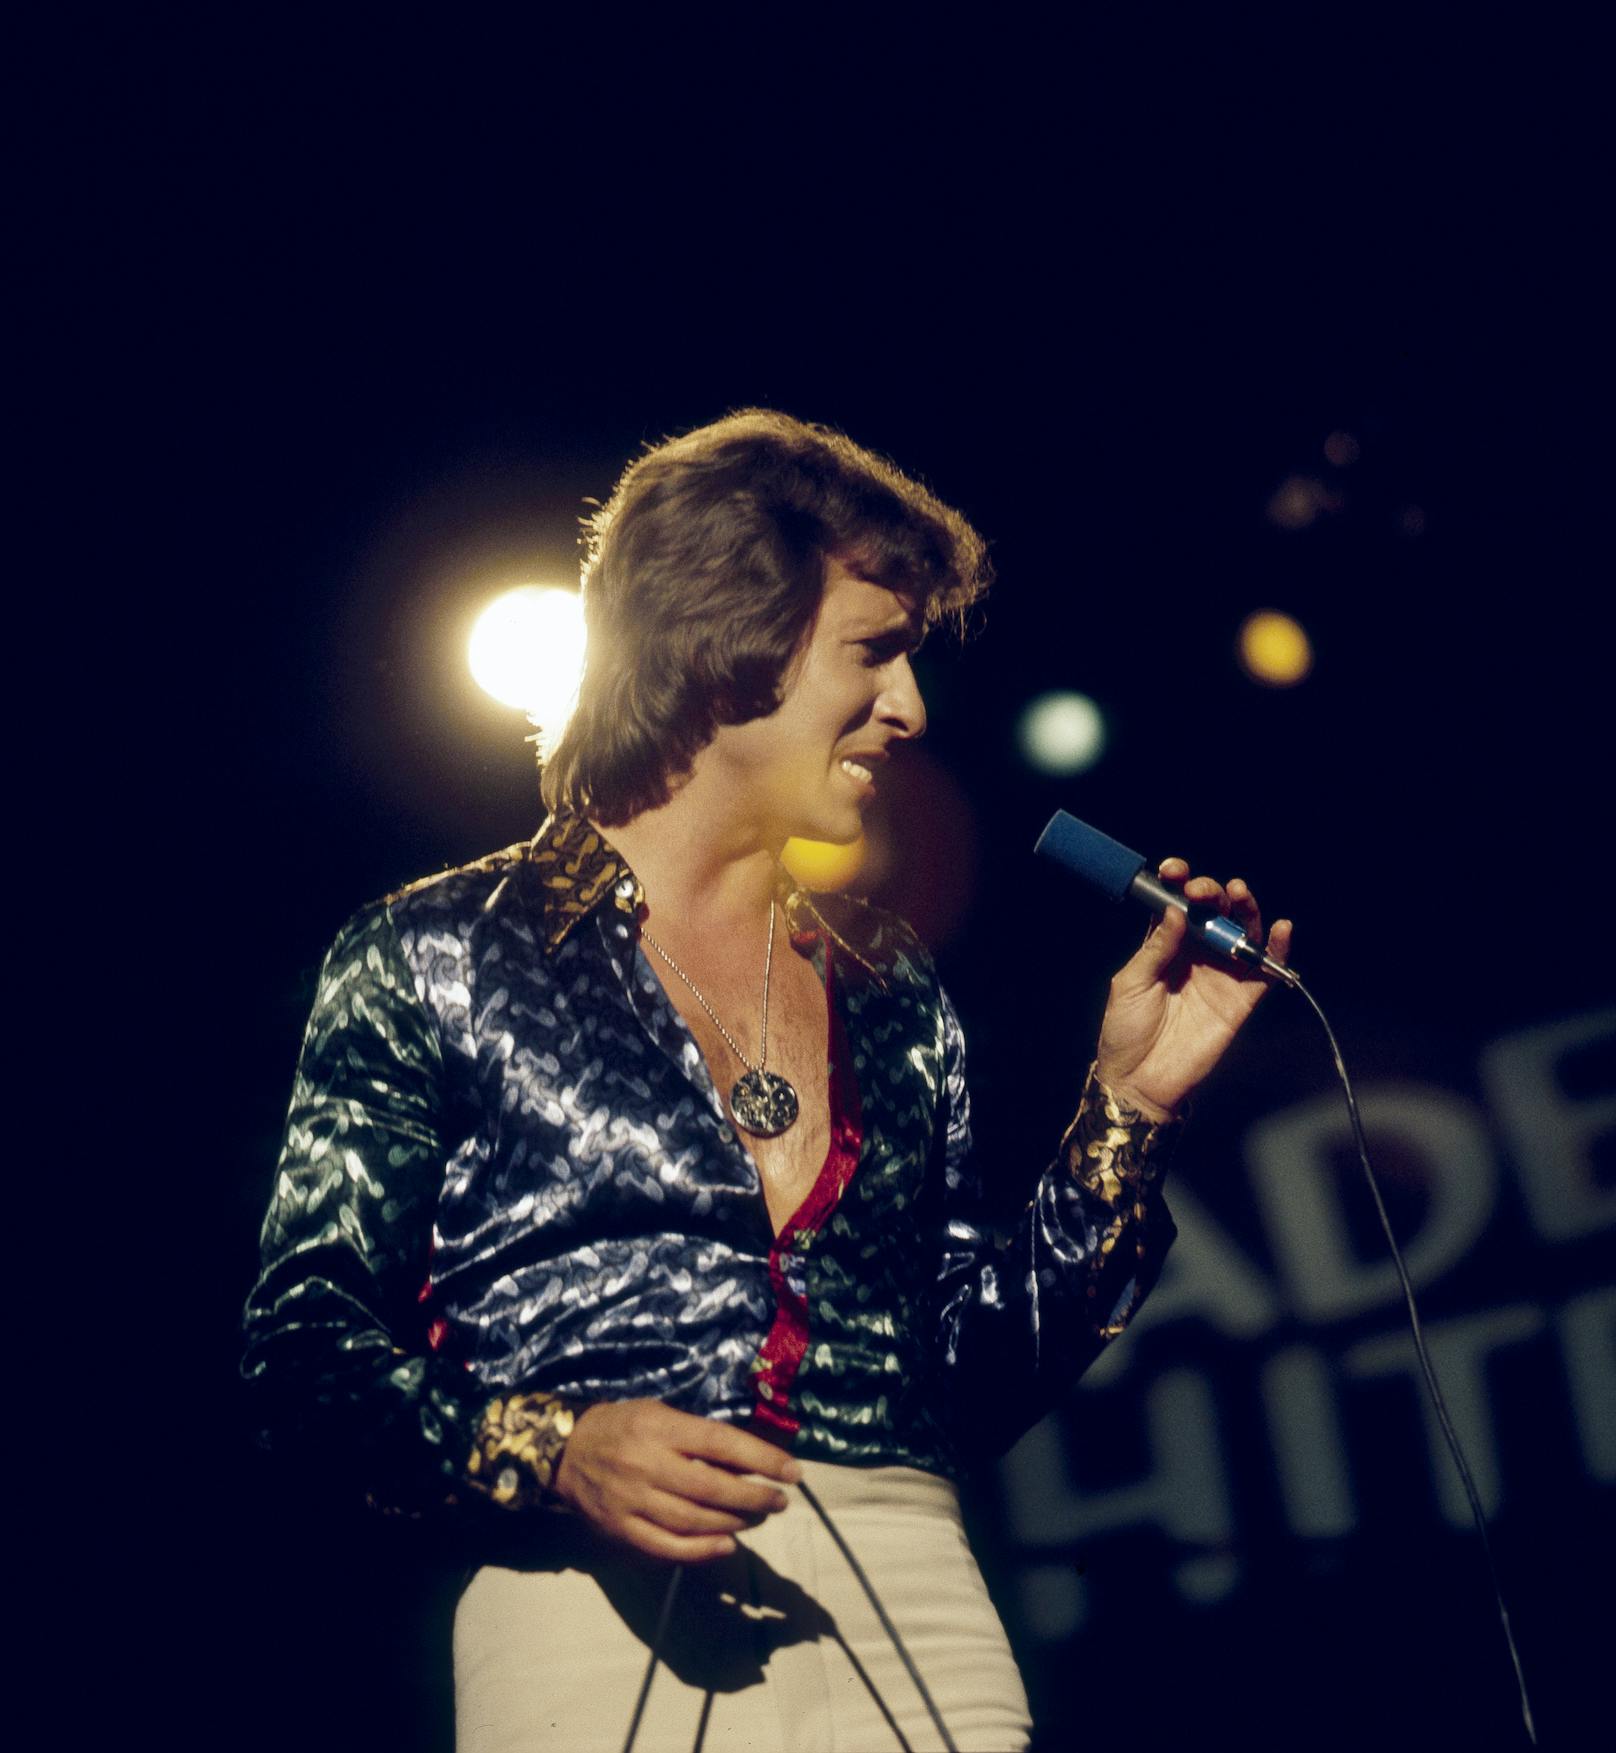 Sein einziger Nummer-1-Hit war "Tränen lügen nicht" (1974). Danach hatte er noch mit "Mußt Du jetzt gerade gehen, Lucille?" (1977) und "El Lute" (1979) große Erfolge.